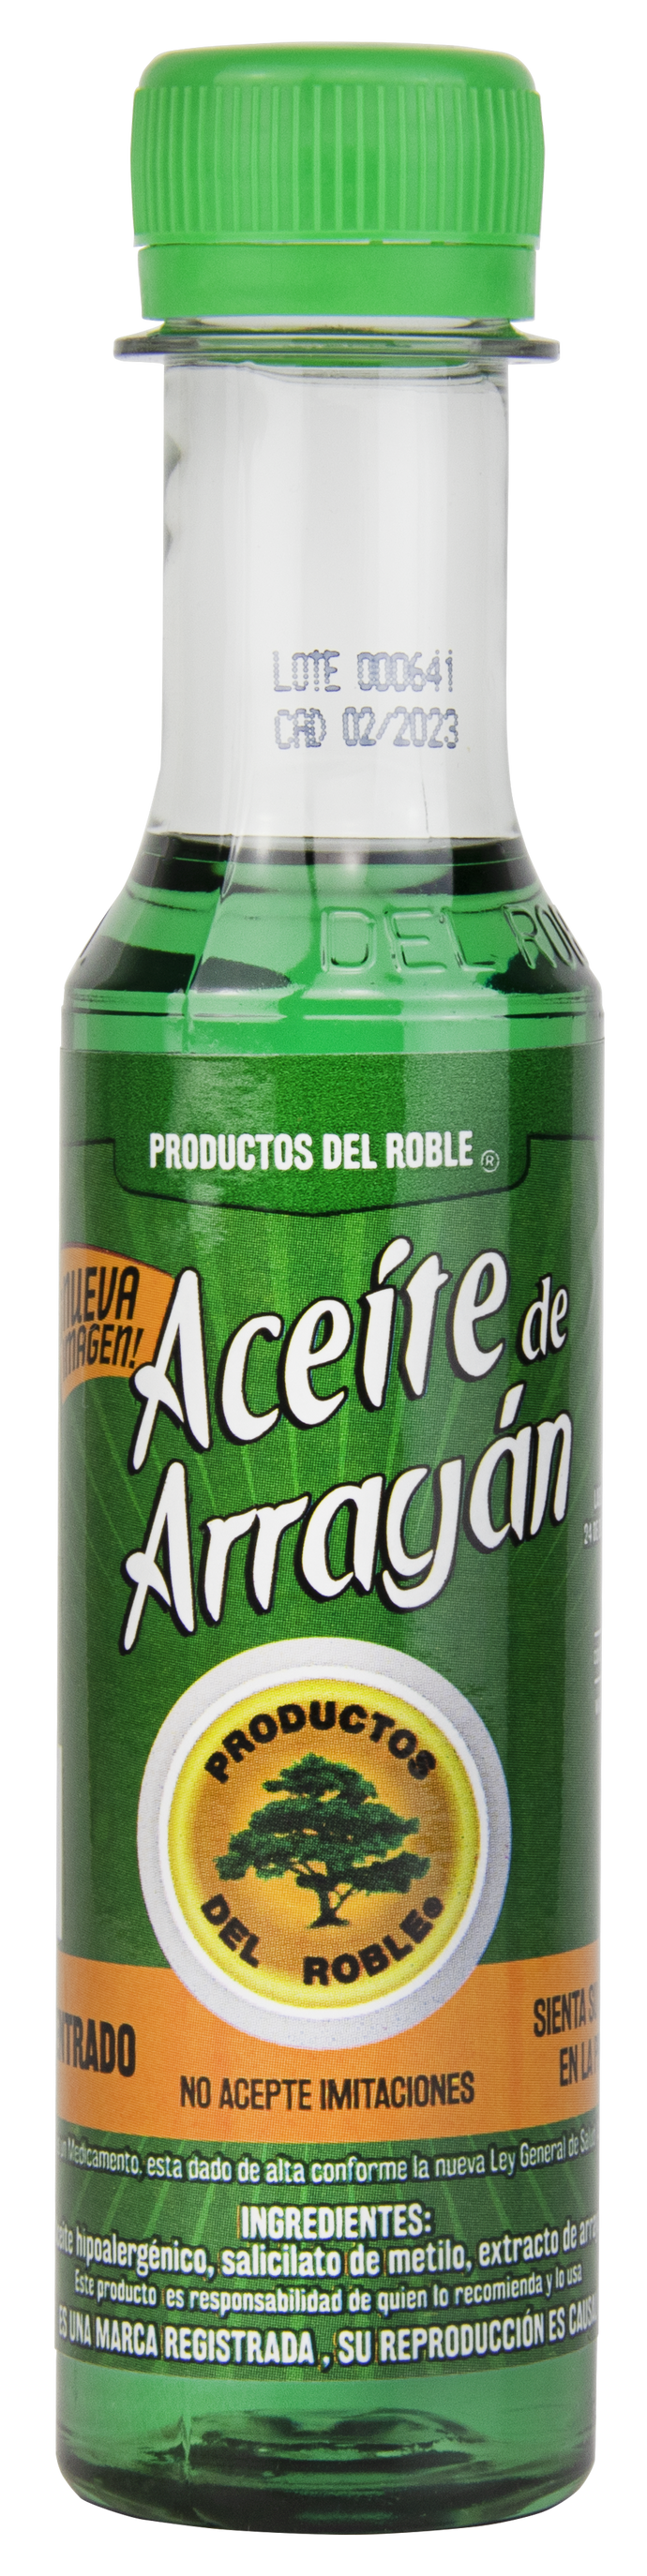 Aceite de Arrayán